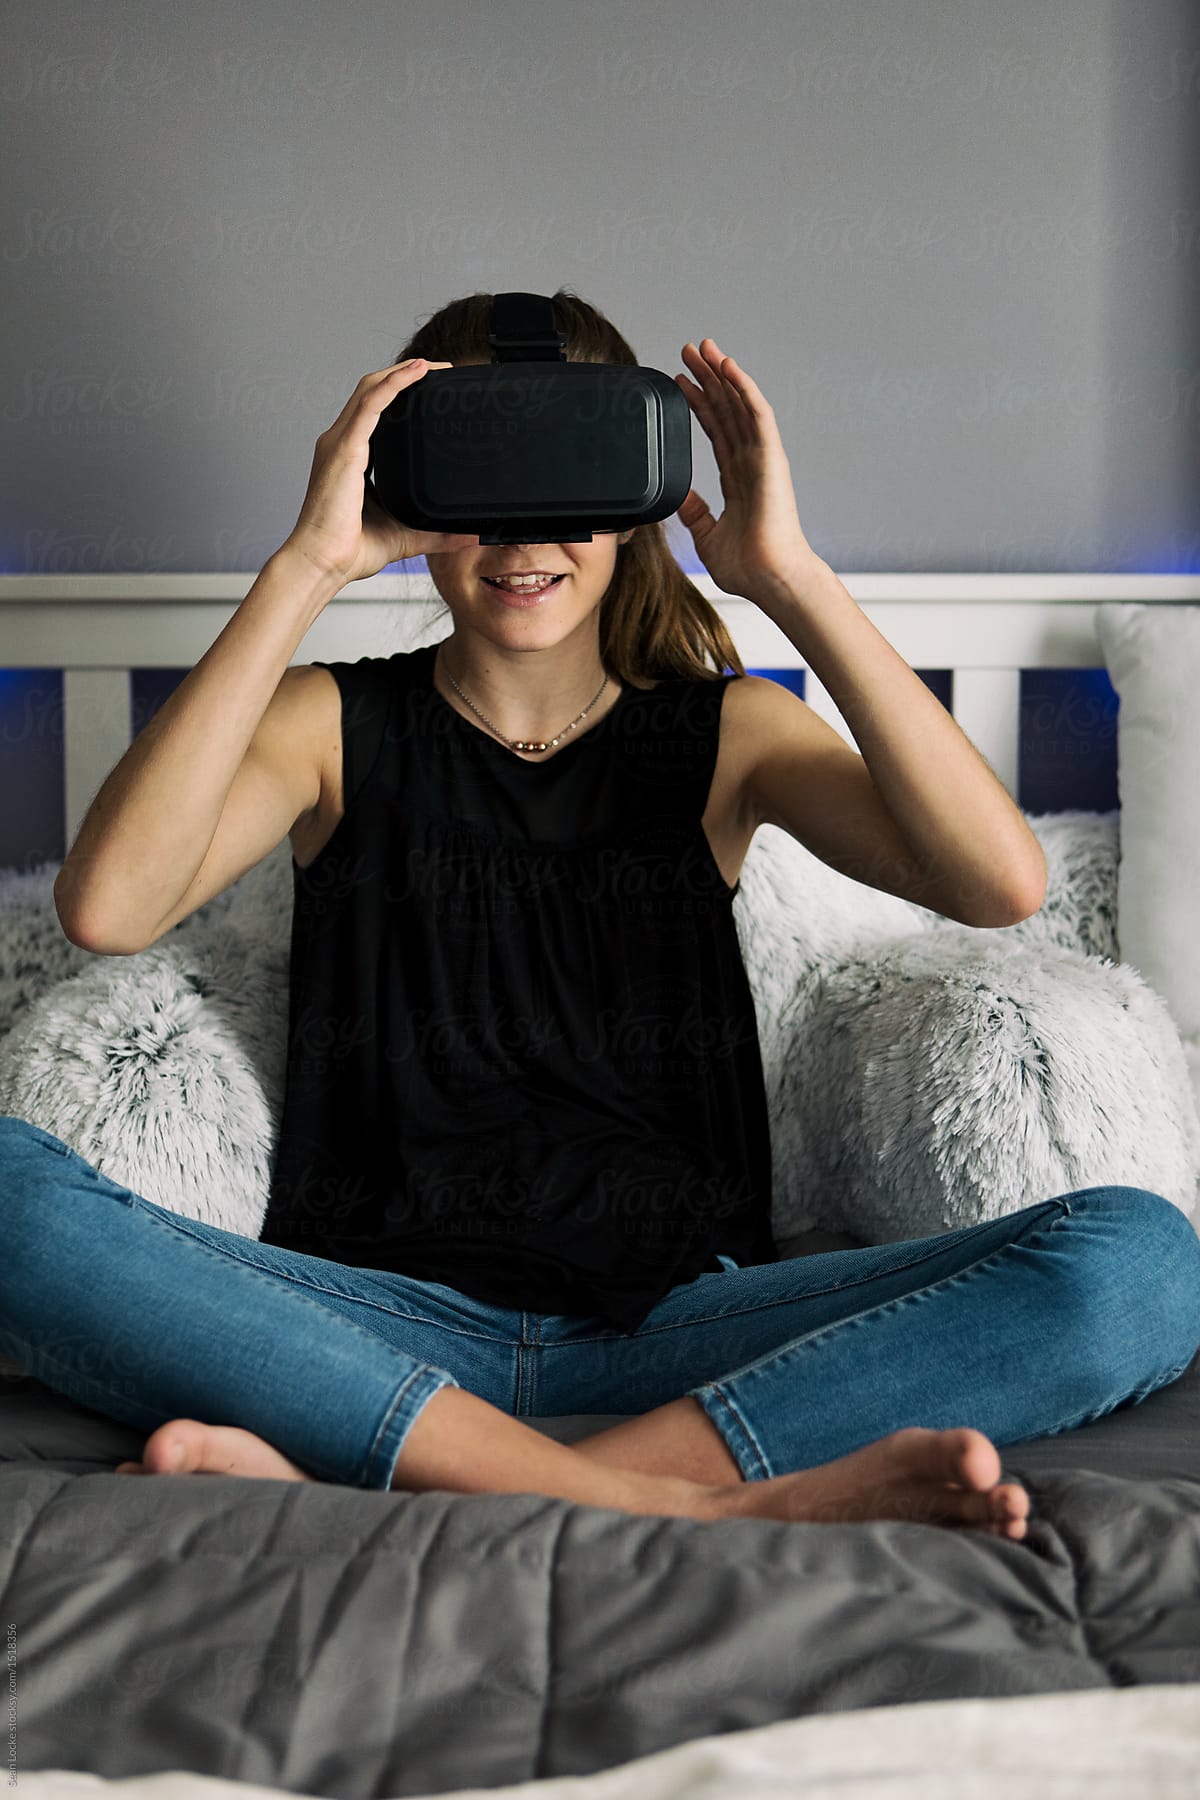 Teenager: Teen Female Putting On VR Visor